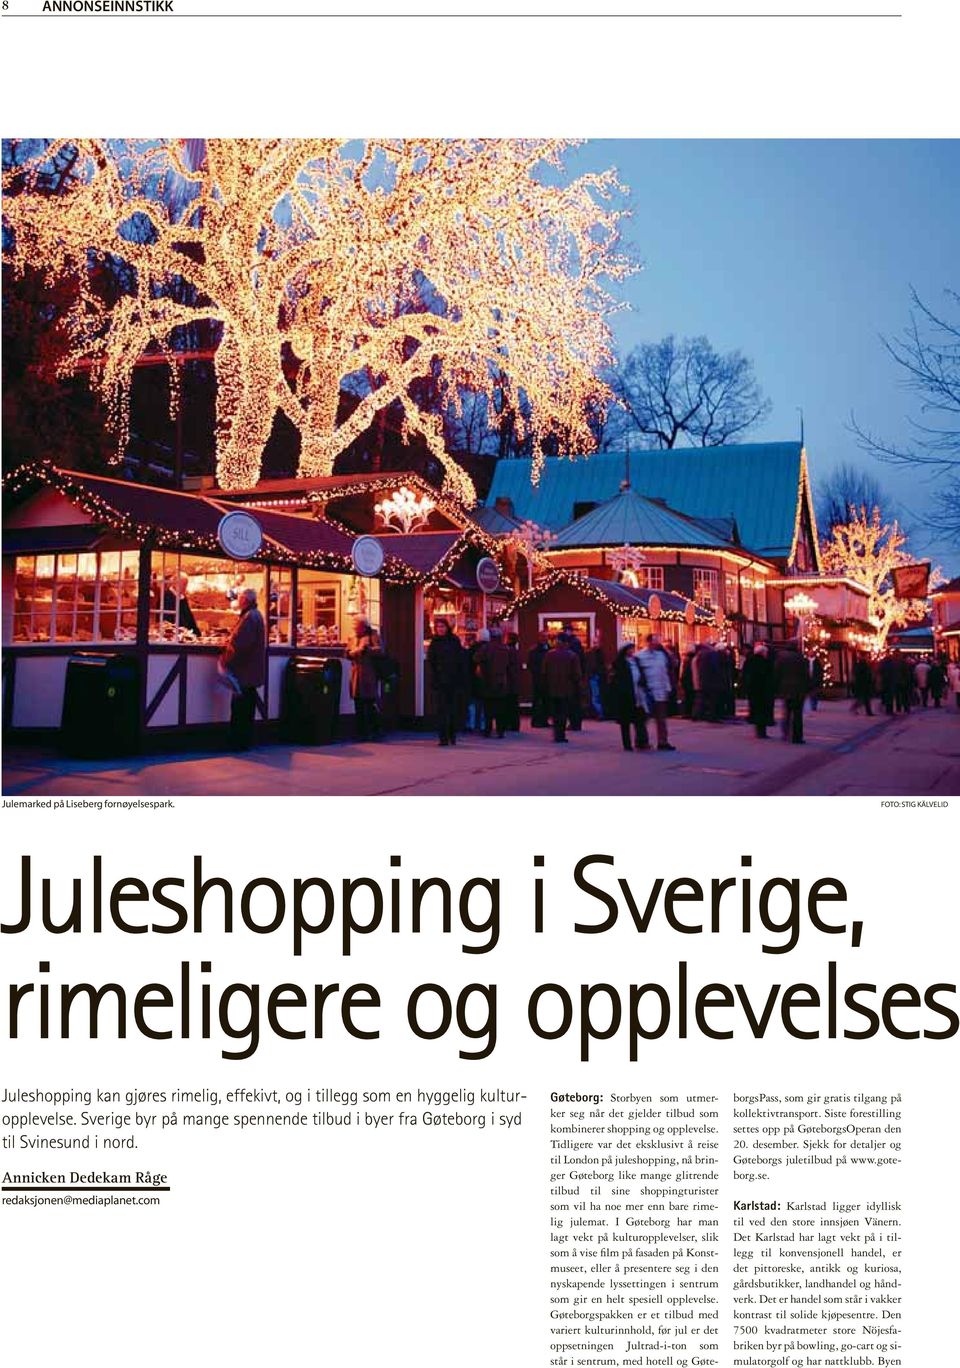 Sverige byr på mange spennende tilbud i byer fra Gøteborg i syd til Svinesund i nord. Annicken Dedekam Råge redaksjonen@mediaplanet.